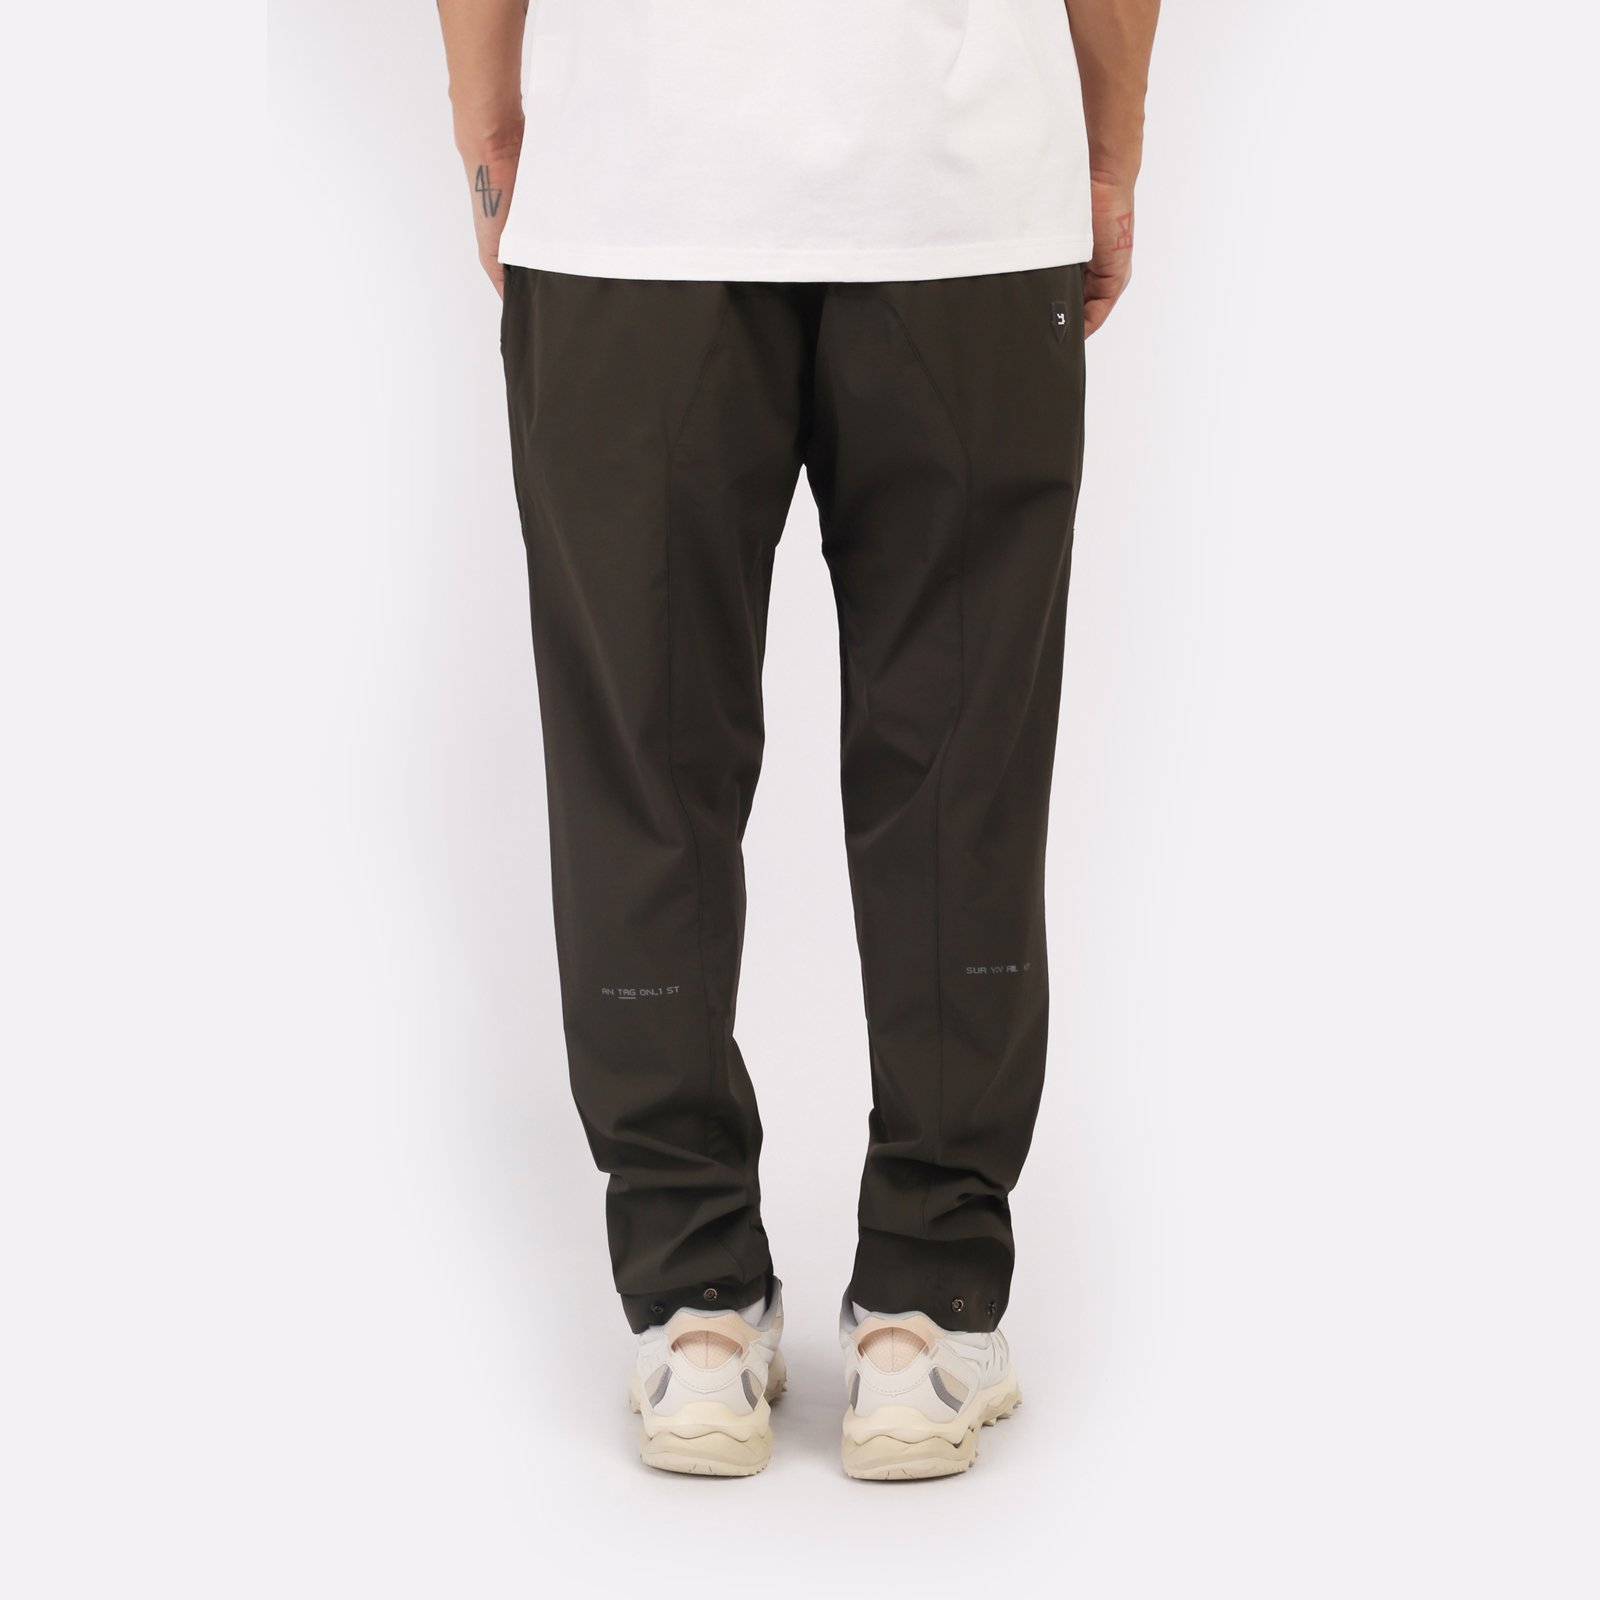 мужские брюки KRAKATAU Rm180-5  (Rm180-5-тем-зел)  - цена, описание, фото 2